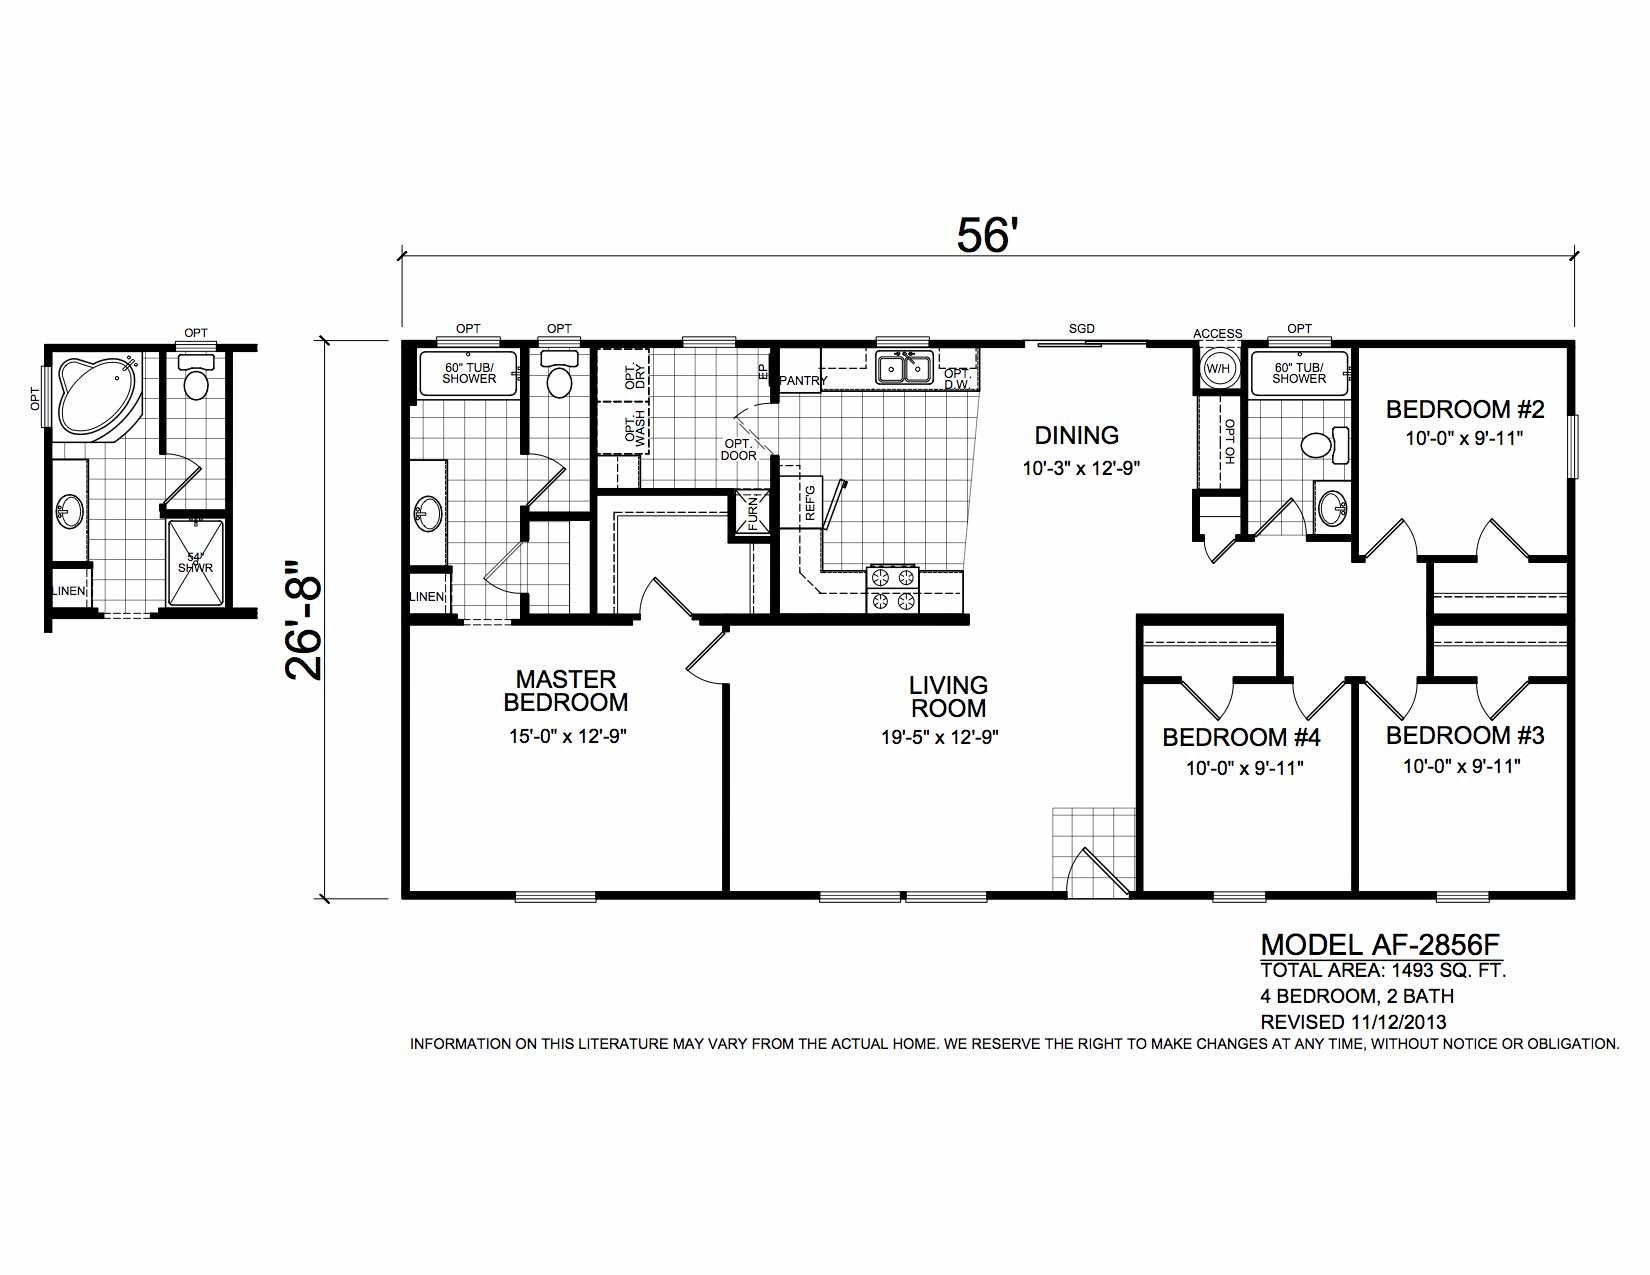 Homes Direct Modular Homes - Model AF2856F - Floorplan